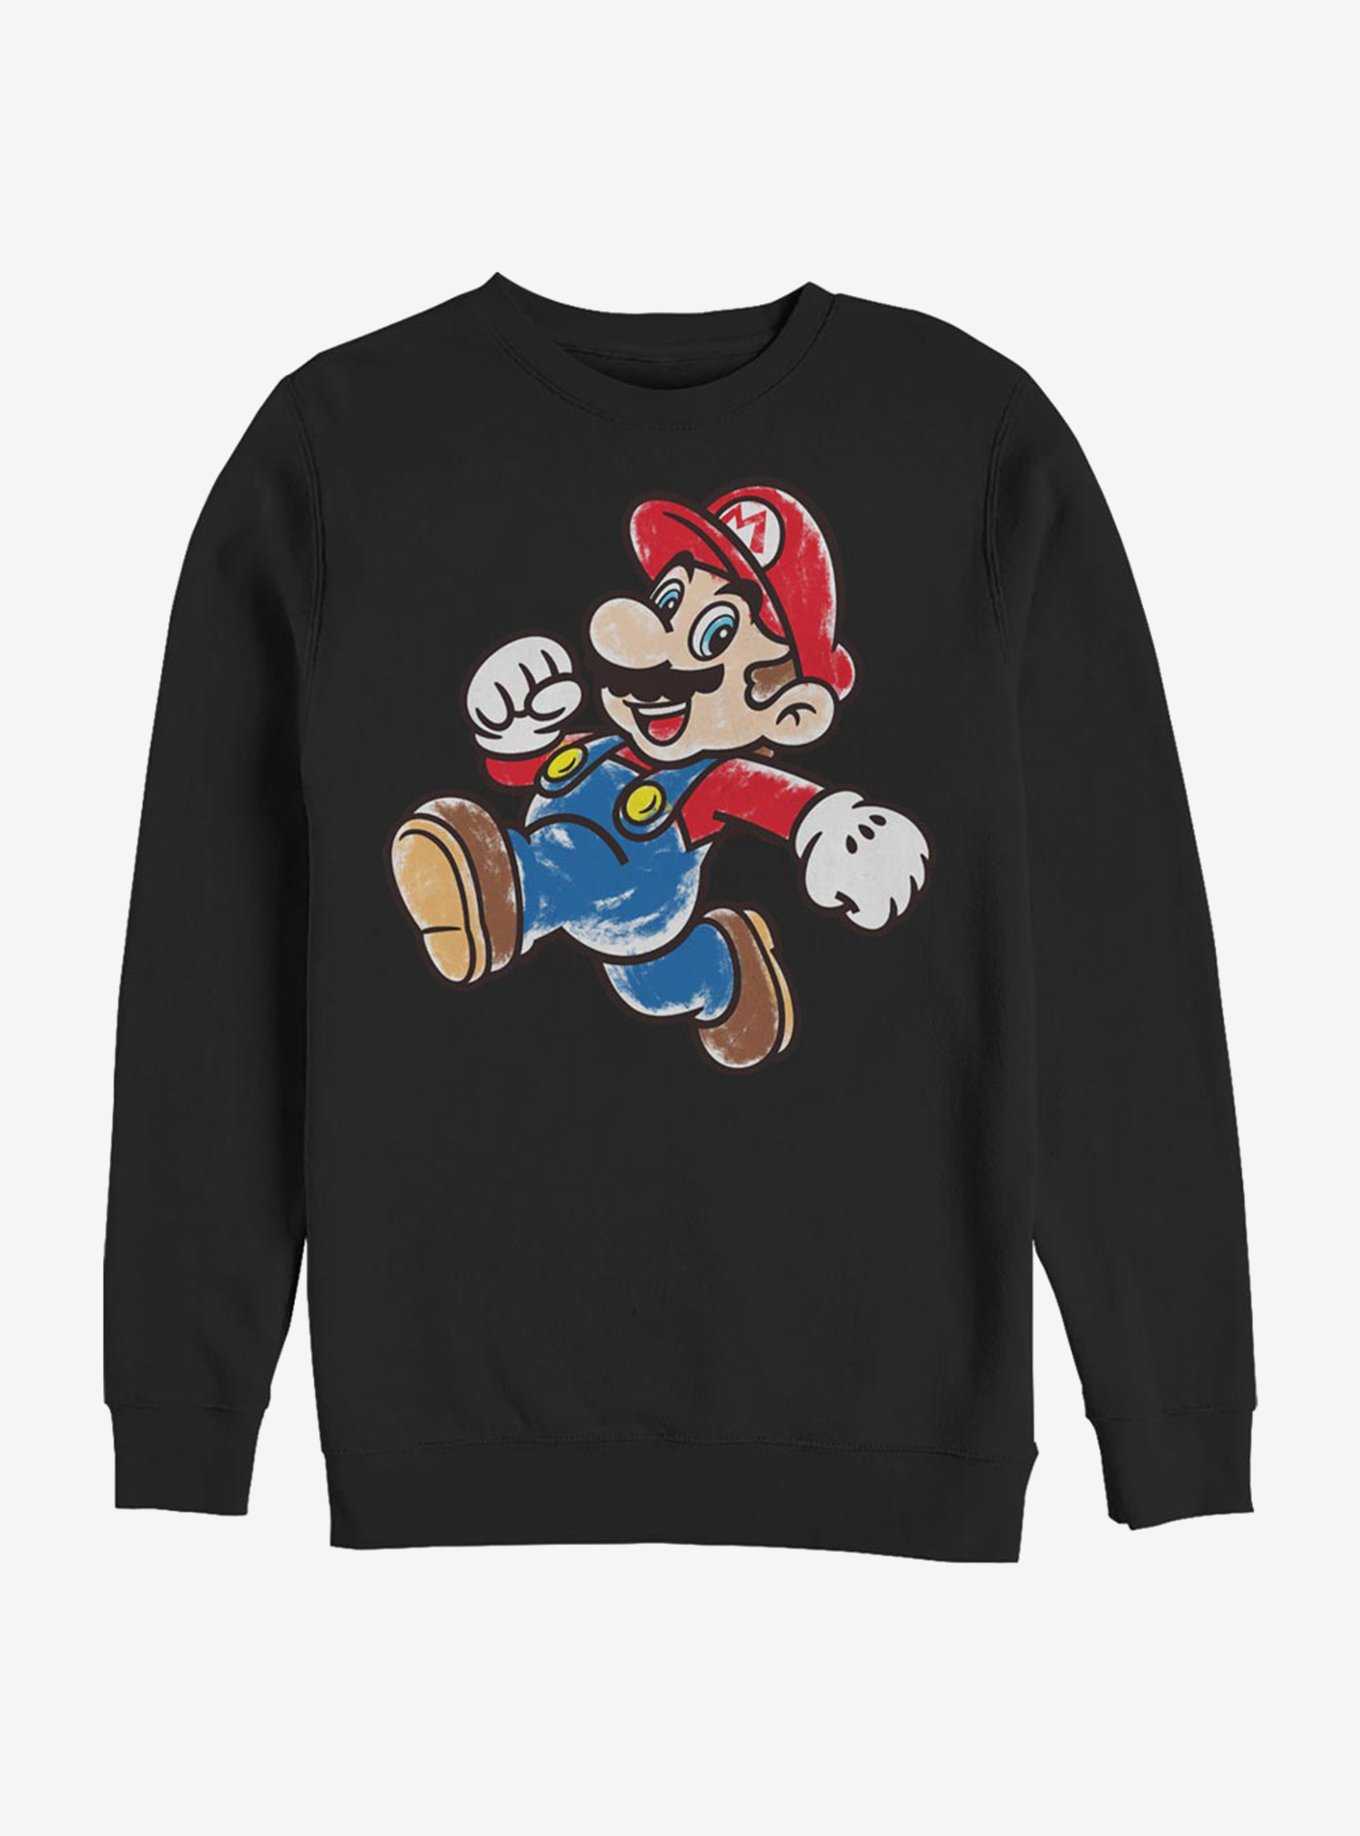 Super Mario Artsy Mario Crew Sweatshirt, , hi-res